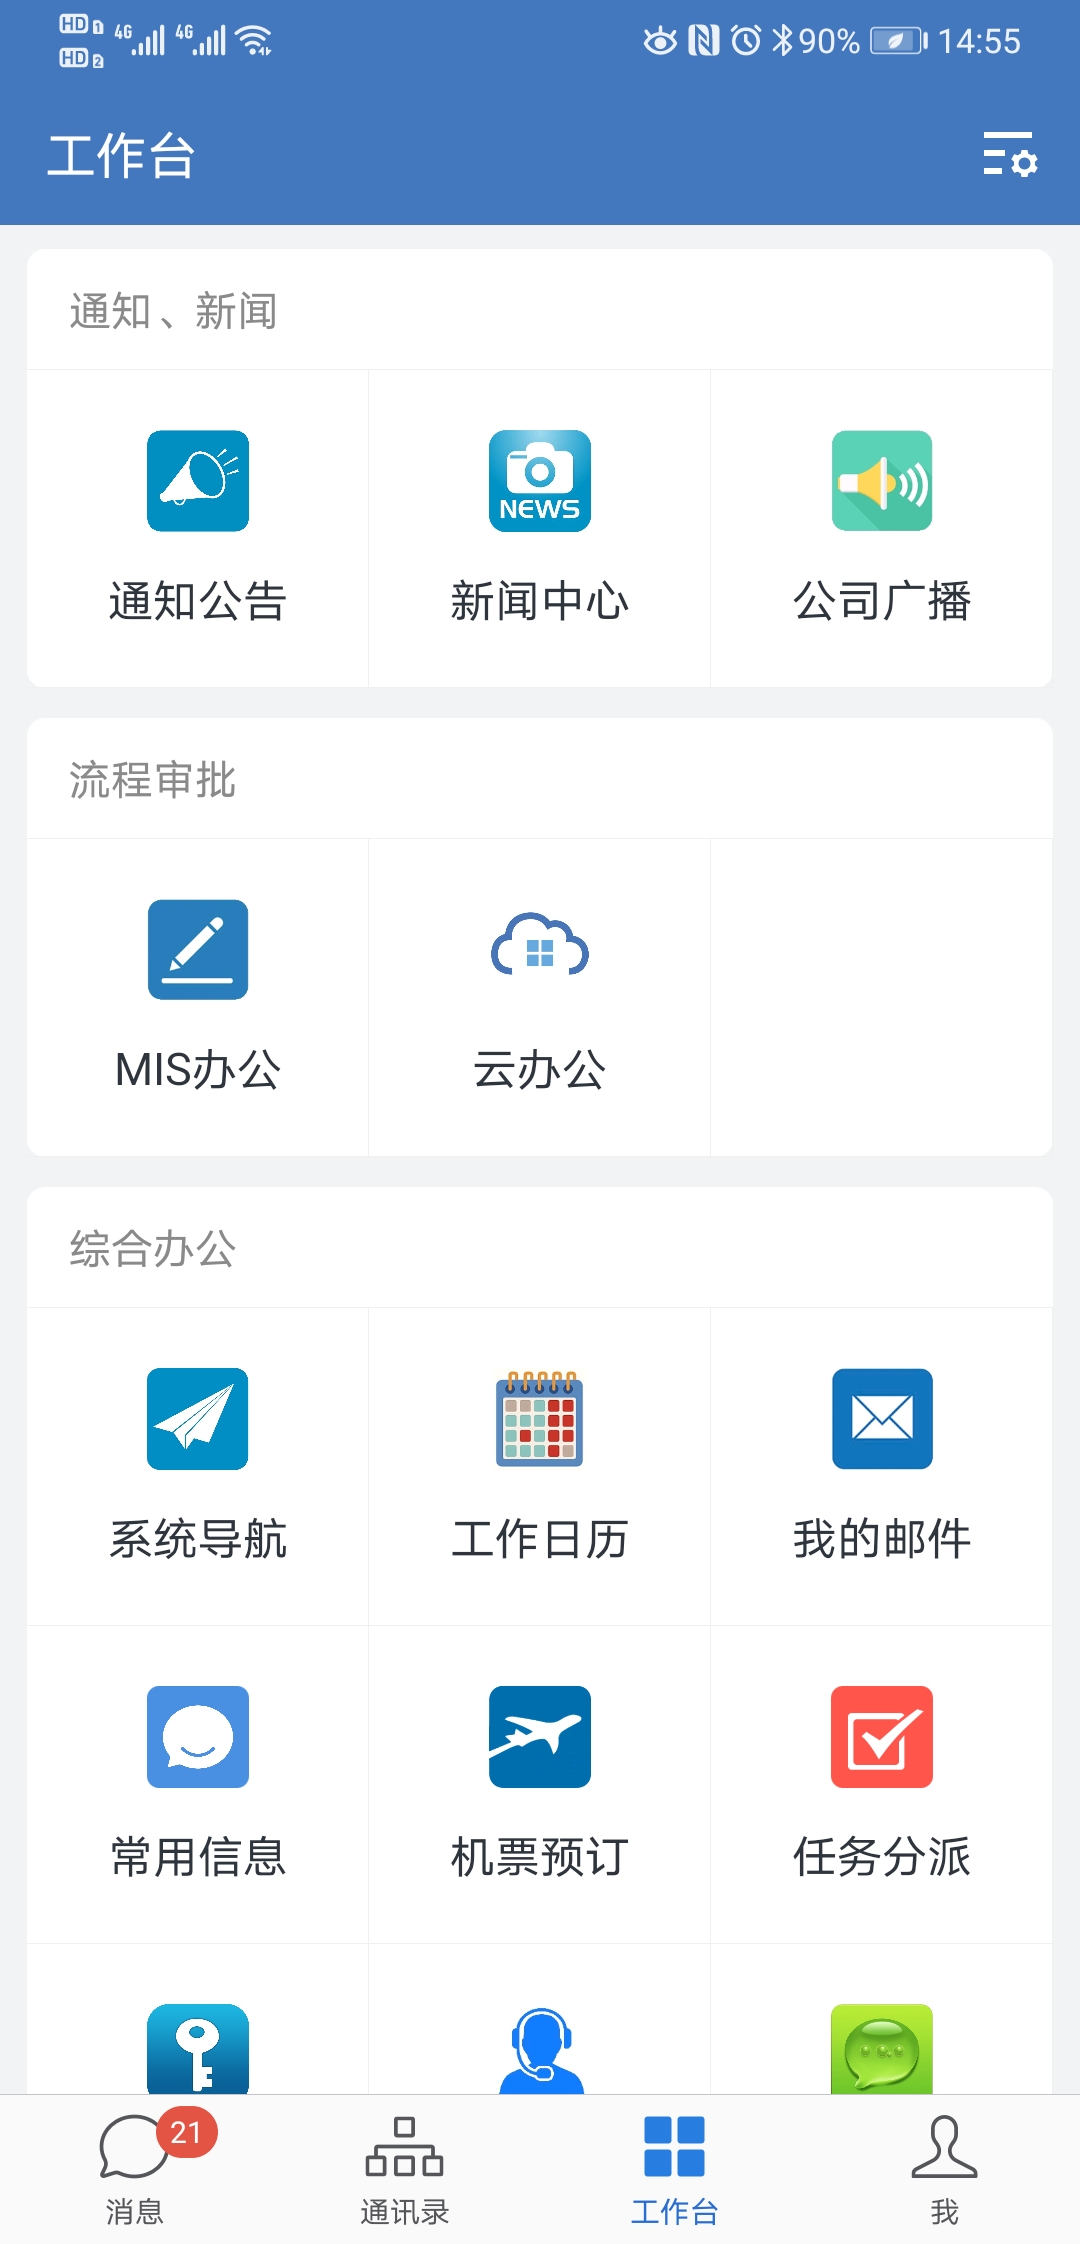 中国电建集团XX院-企业微信移动门户系统